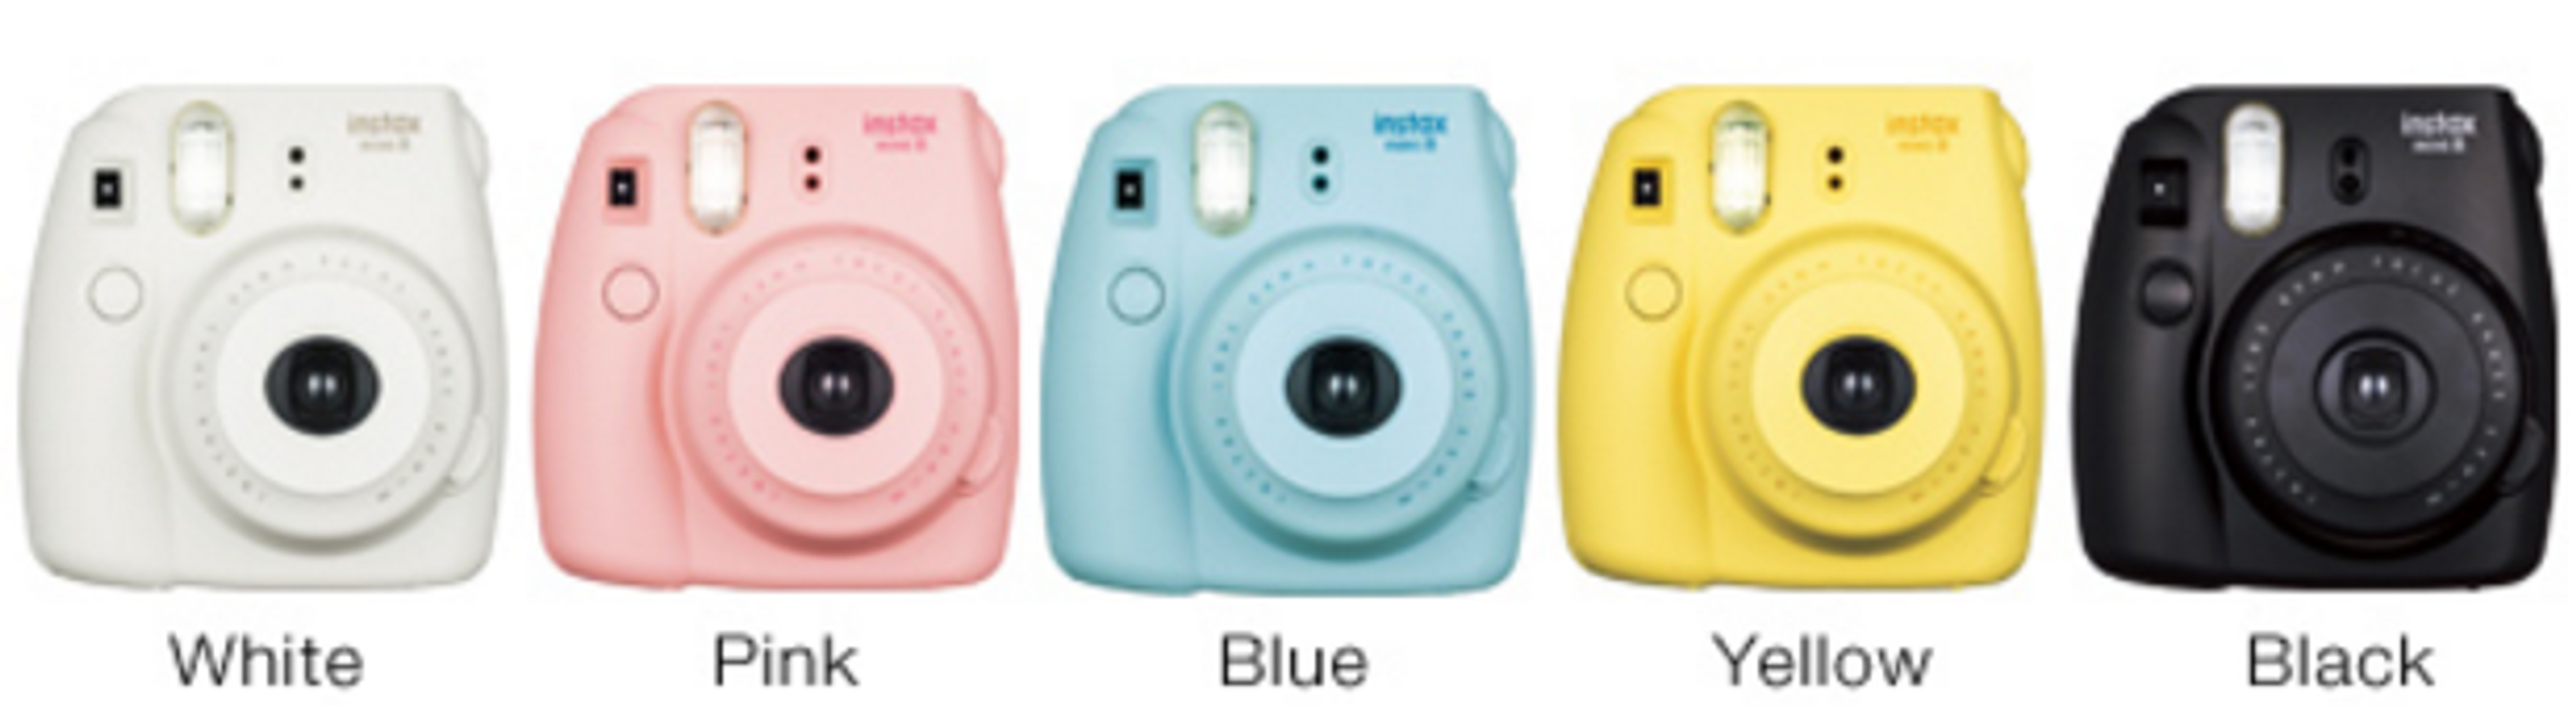 Bộ sưu tập đủ màu máy ảnh chụp lấy liền Fujifilm instax mini 8s